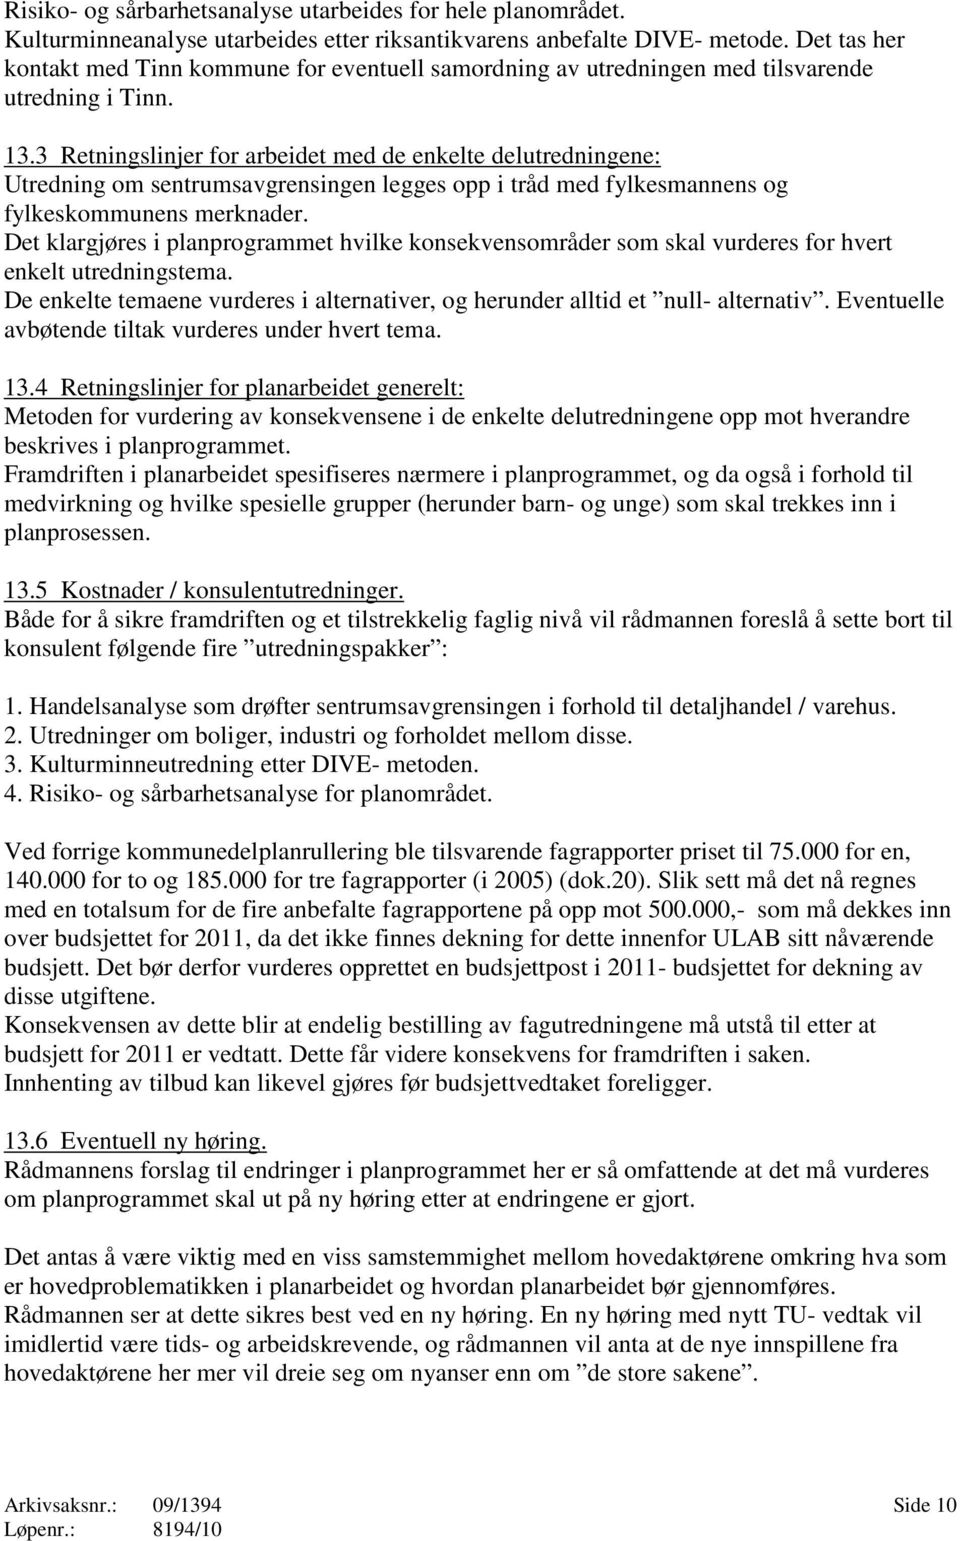 3 Retningslinjer for arbeidet med de enkelte delutredningene: Utredning om sentrumsavgrensingen legges opp i tråd med fylkesmannens og fylkeskommunens merknader.